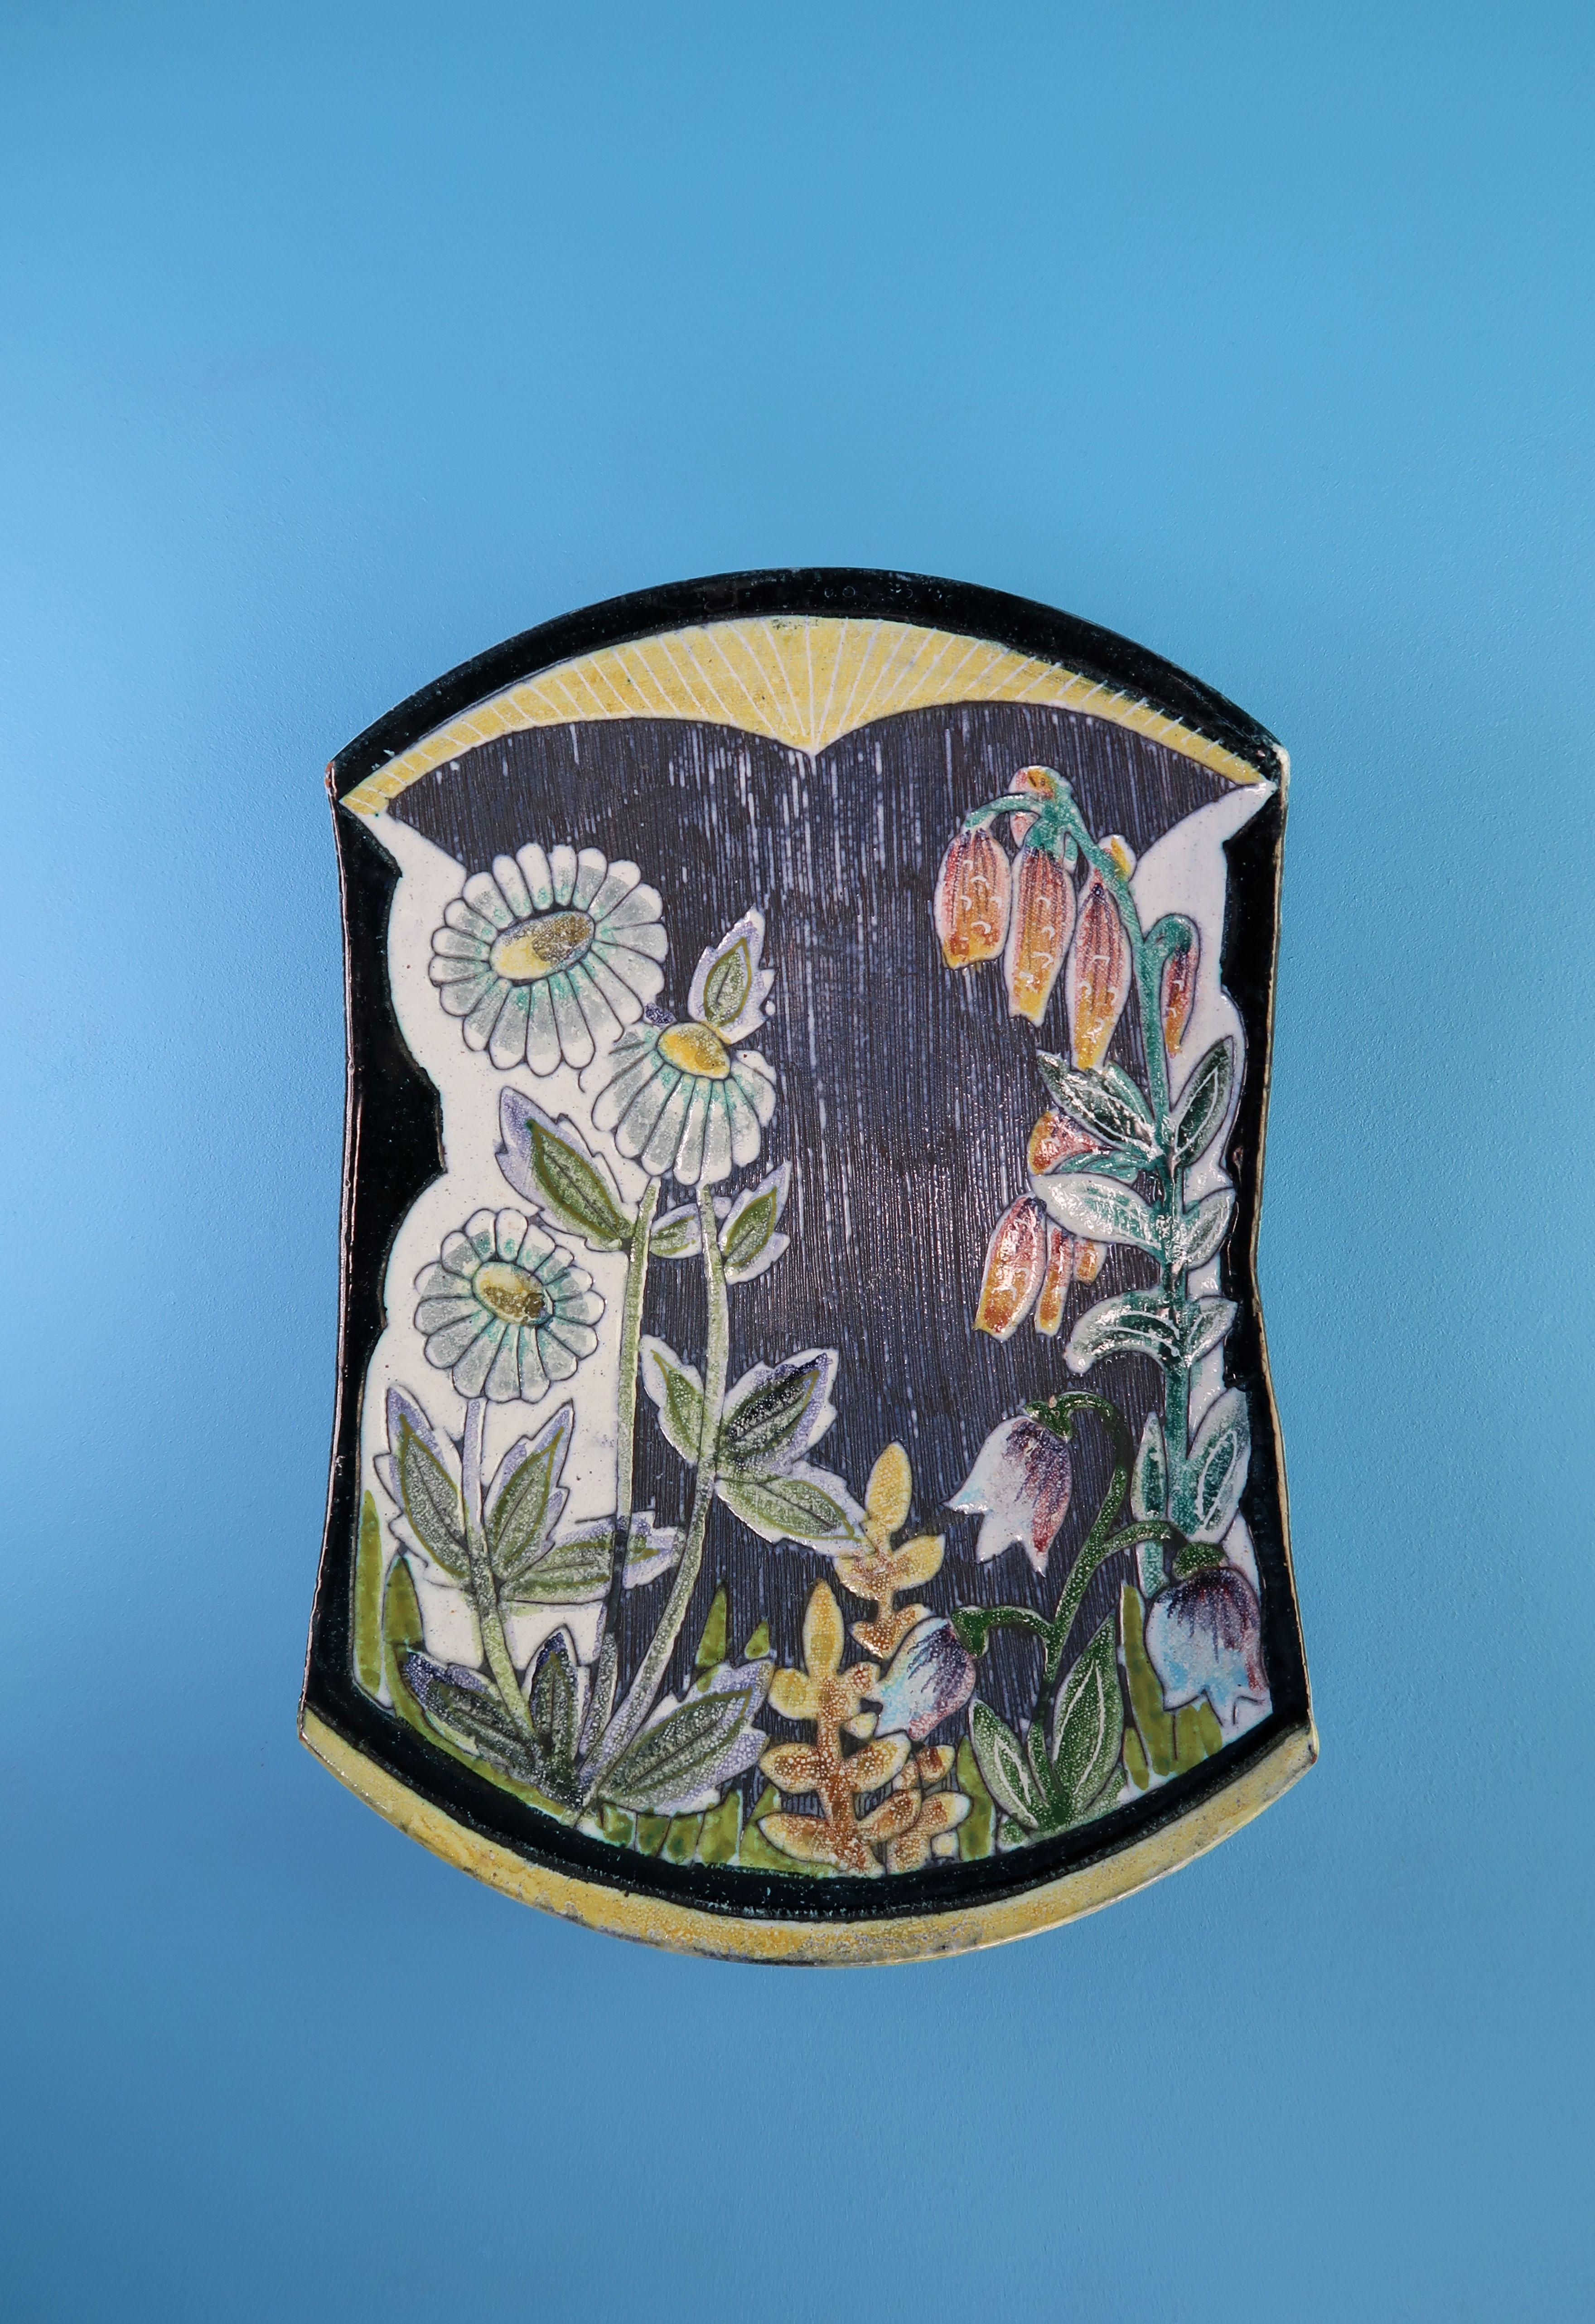 Plateau mural en céramique de style moderne du milieu du siècle, fabriqué à la main par le suédois Tilgmans en 1957. Décor floral peint à la main en couleurs blanc, jaune, orange, rose, bleu clair et vert sur base noire. Glace bleu clair et décor